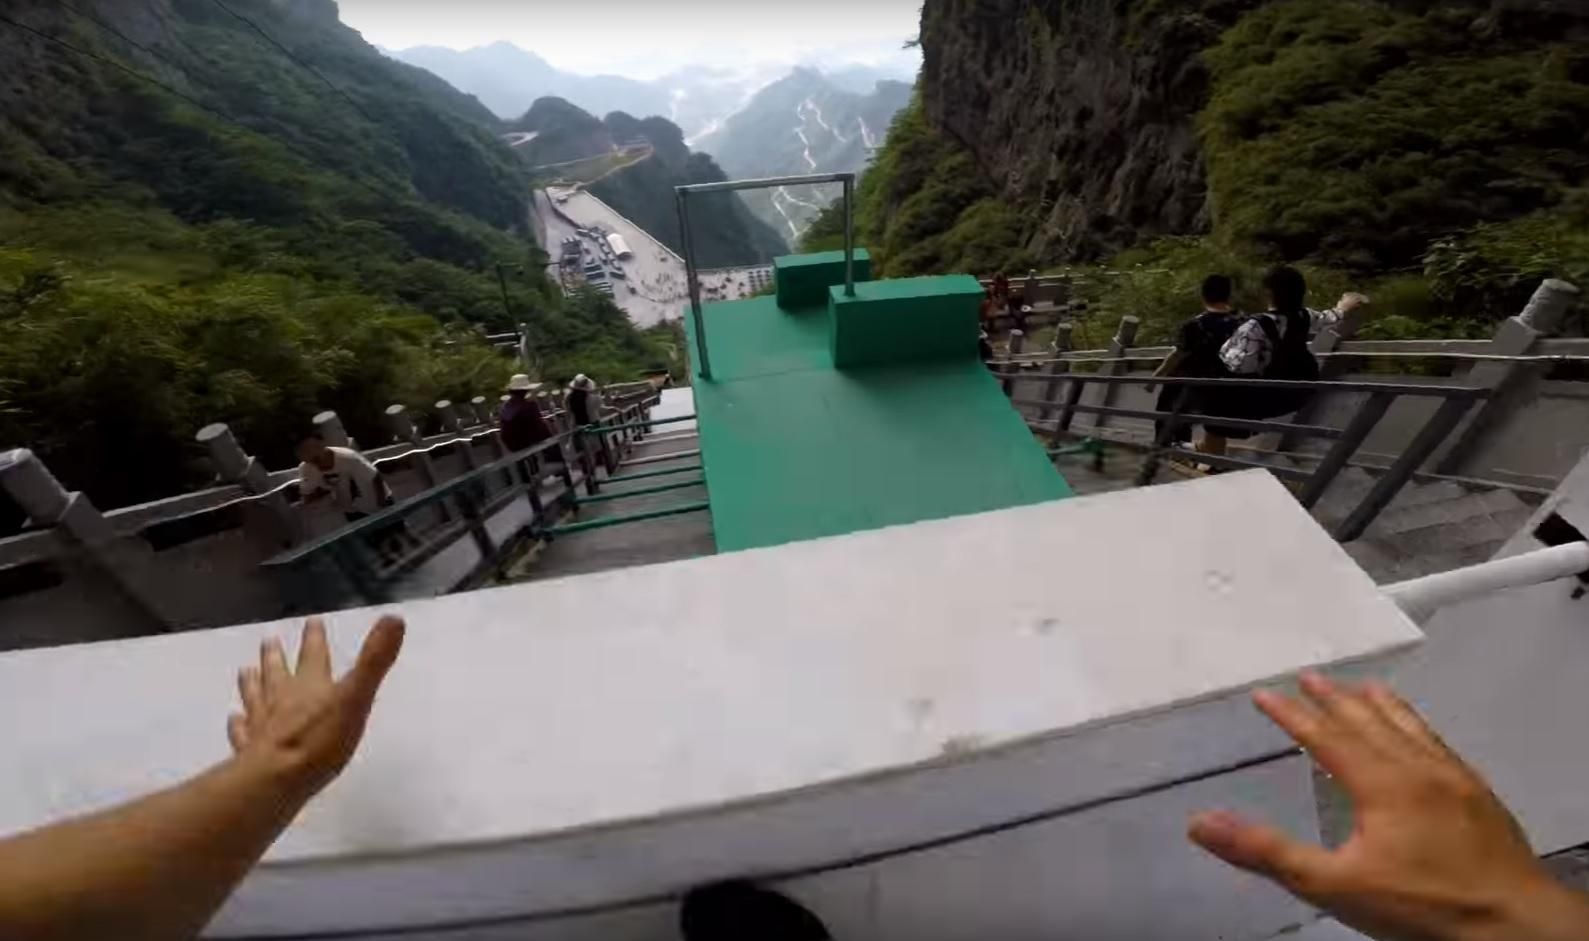 Смотреть страшно: в Китае установили 300-метровую трассу для паркура просто в горах